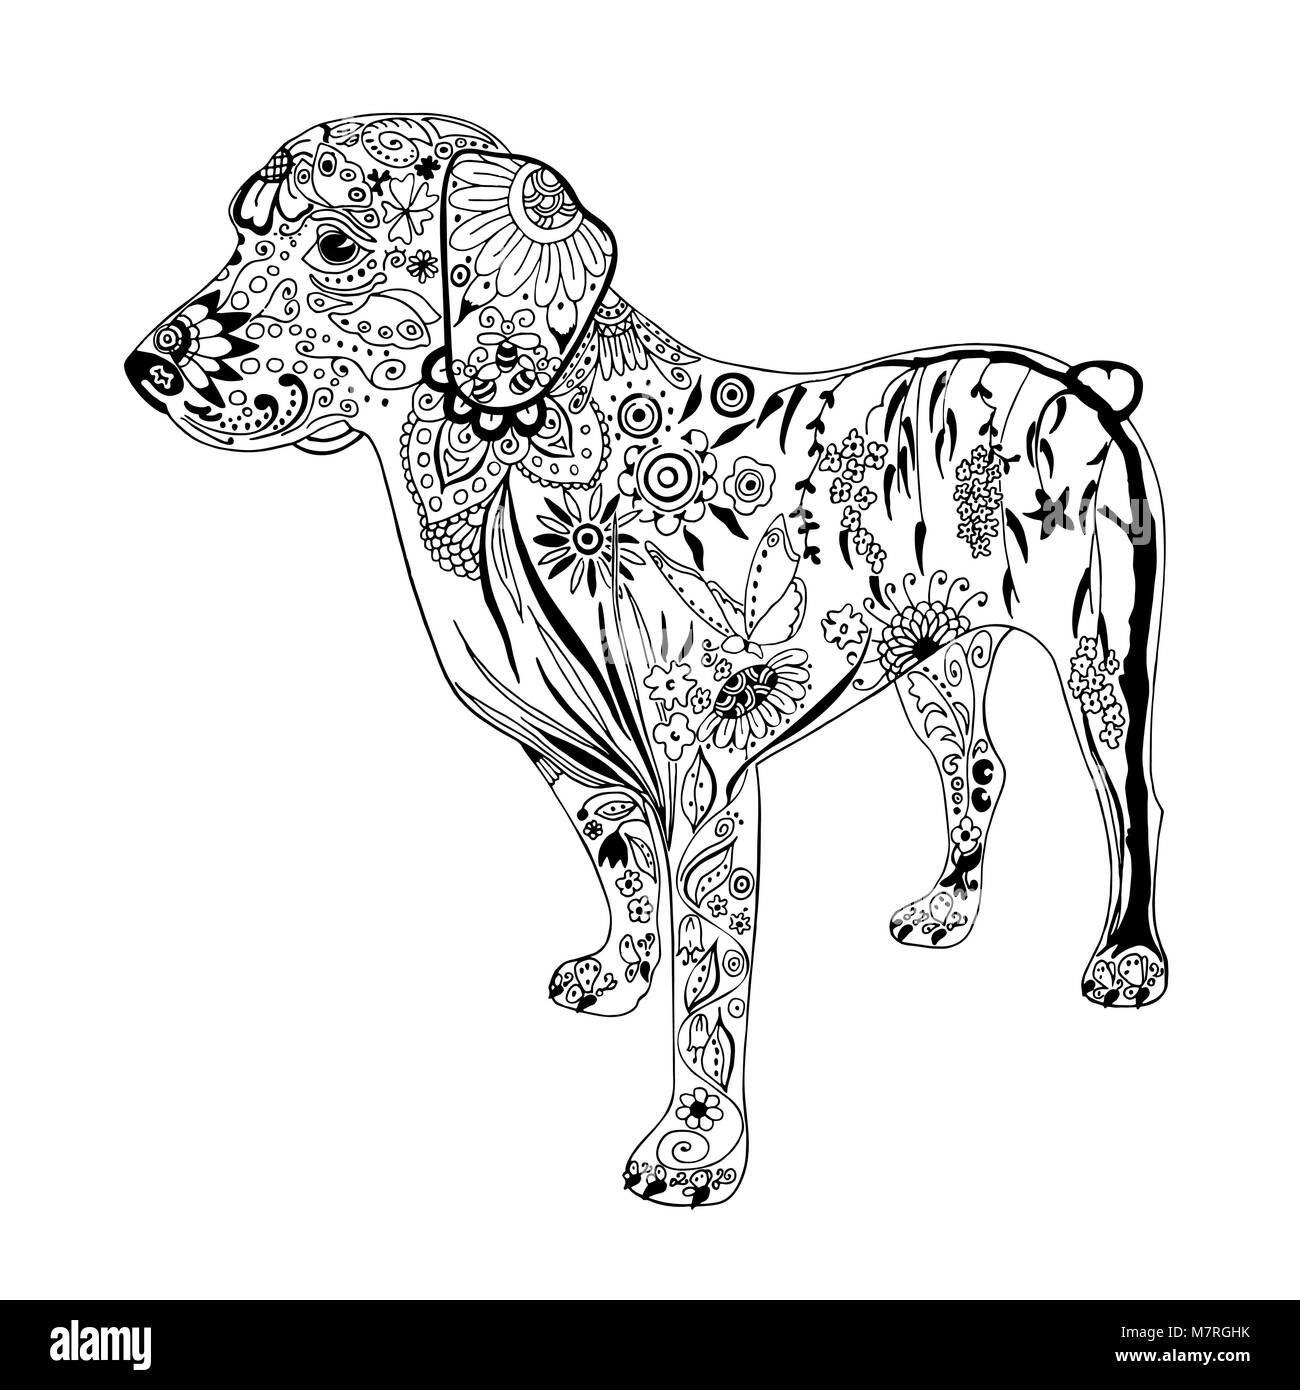 Modellato Il Disegno Del Cane Disegnata A Mano Doodle